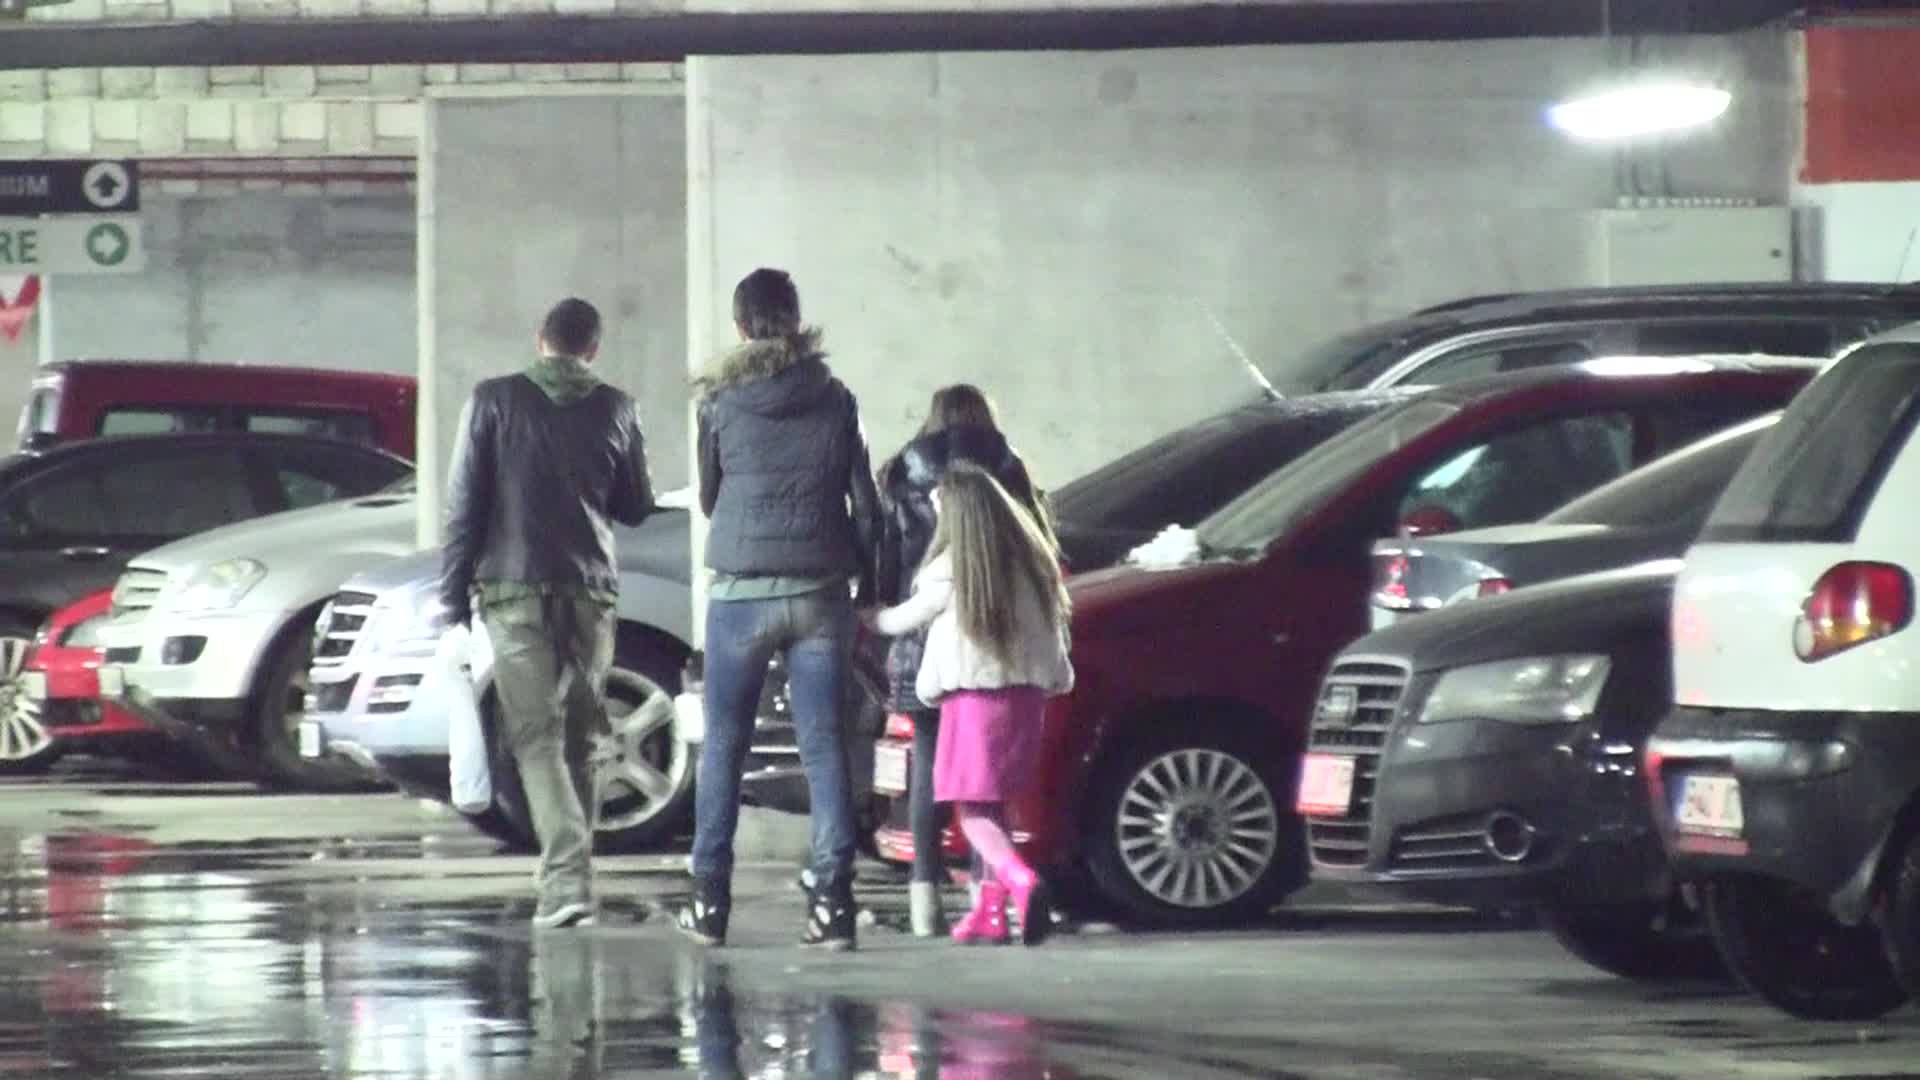 Amalia Nastase si Razvan Vasilescu parasesc parcarea si intra in mall, alaturi de cele doua fetite.